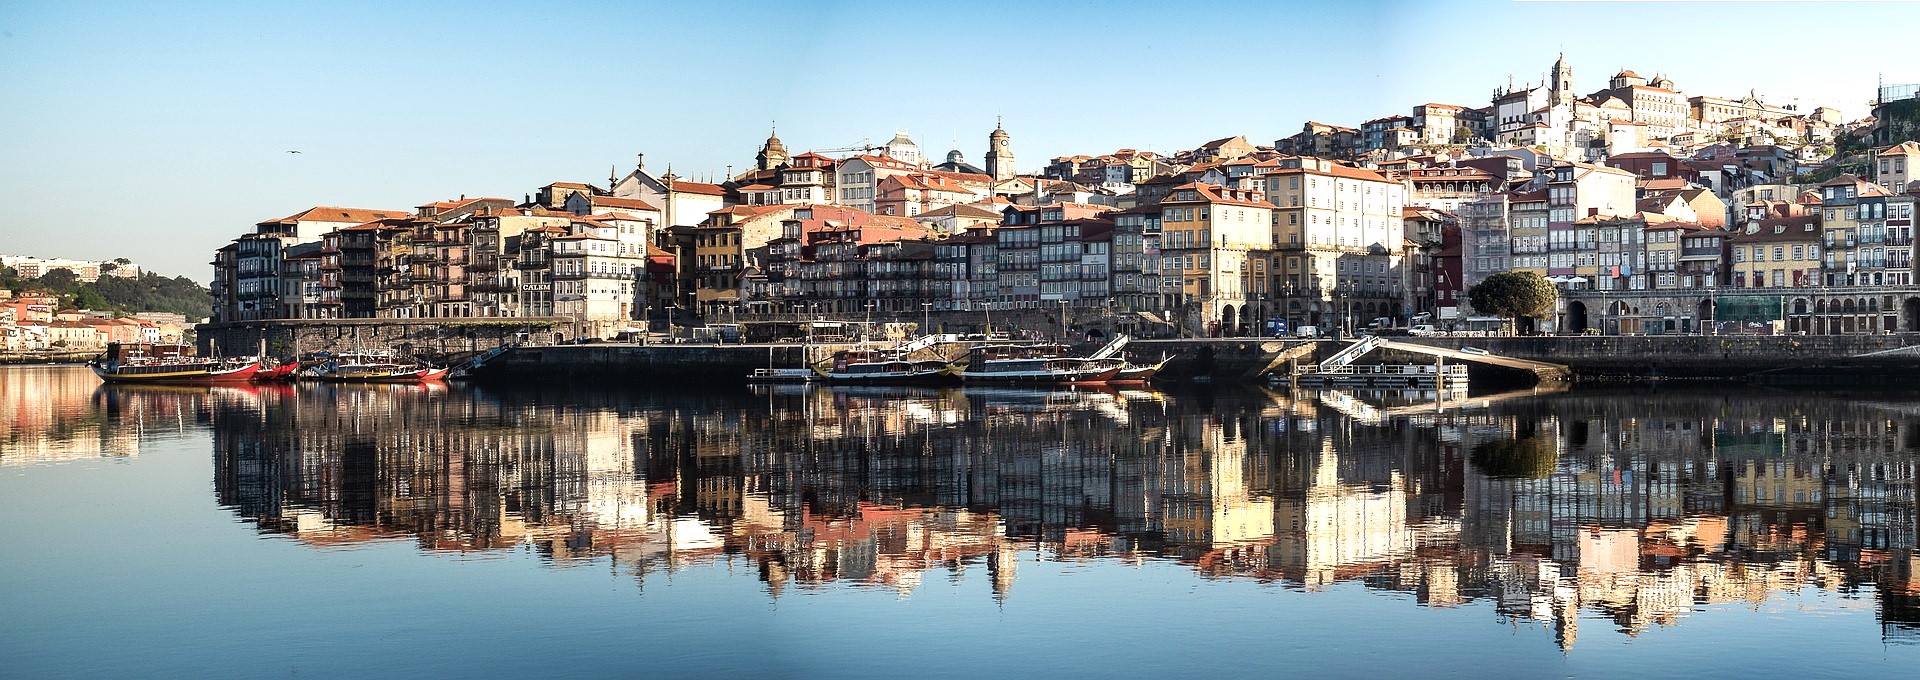 Porto REVIEW|ポルト お客様の声